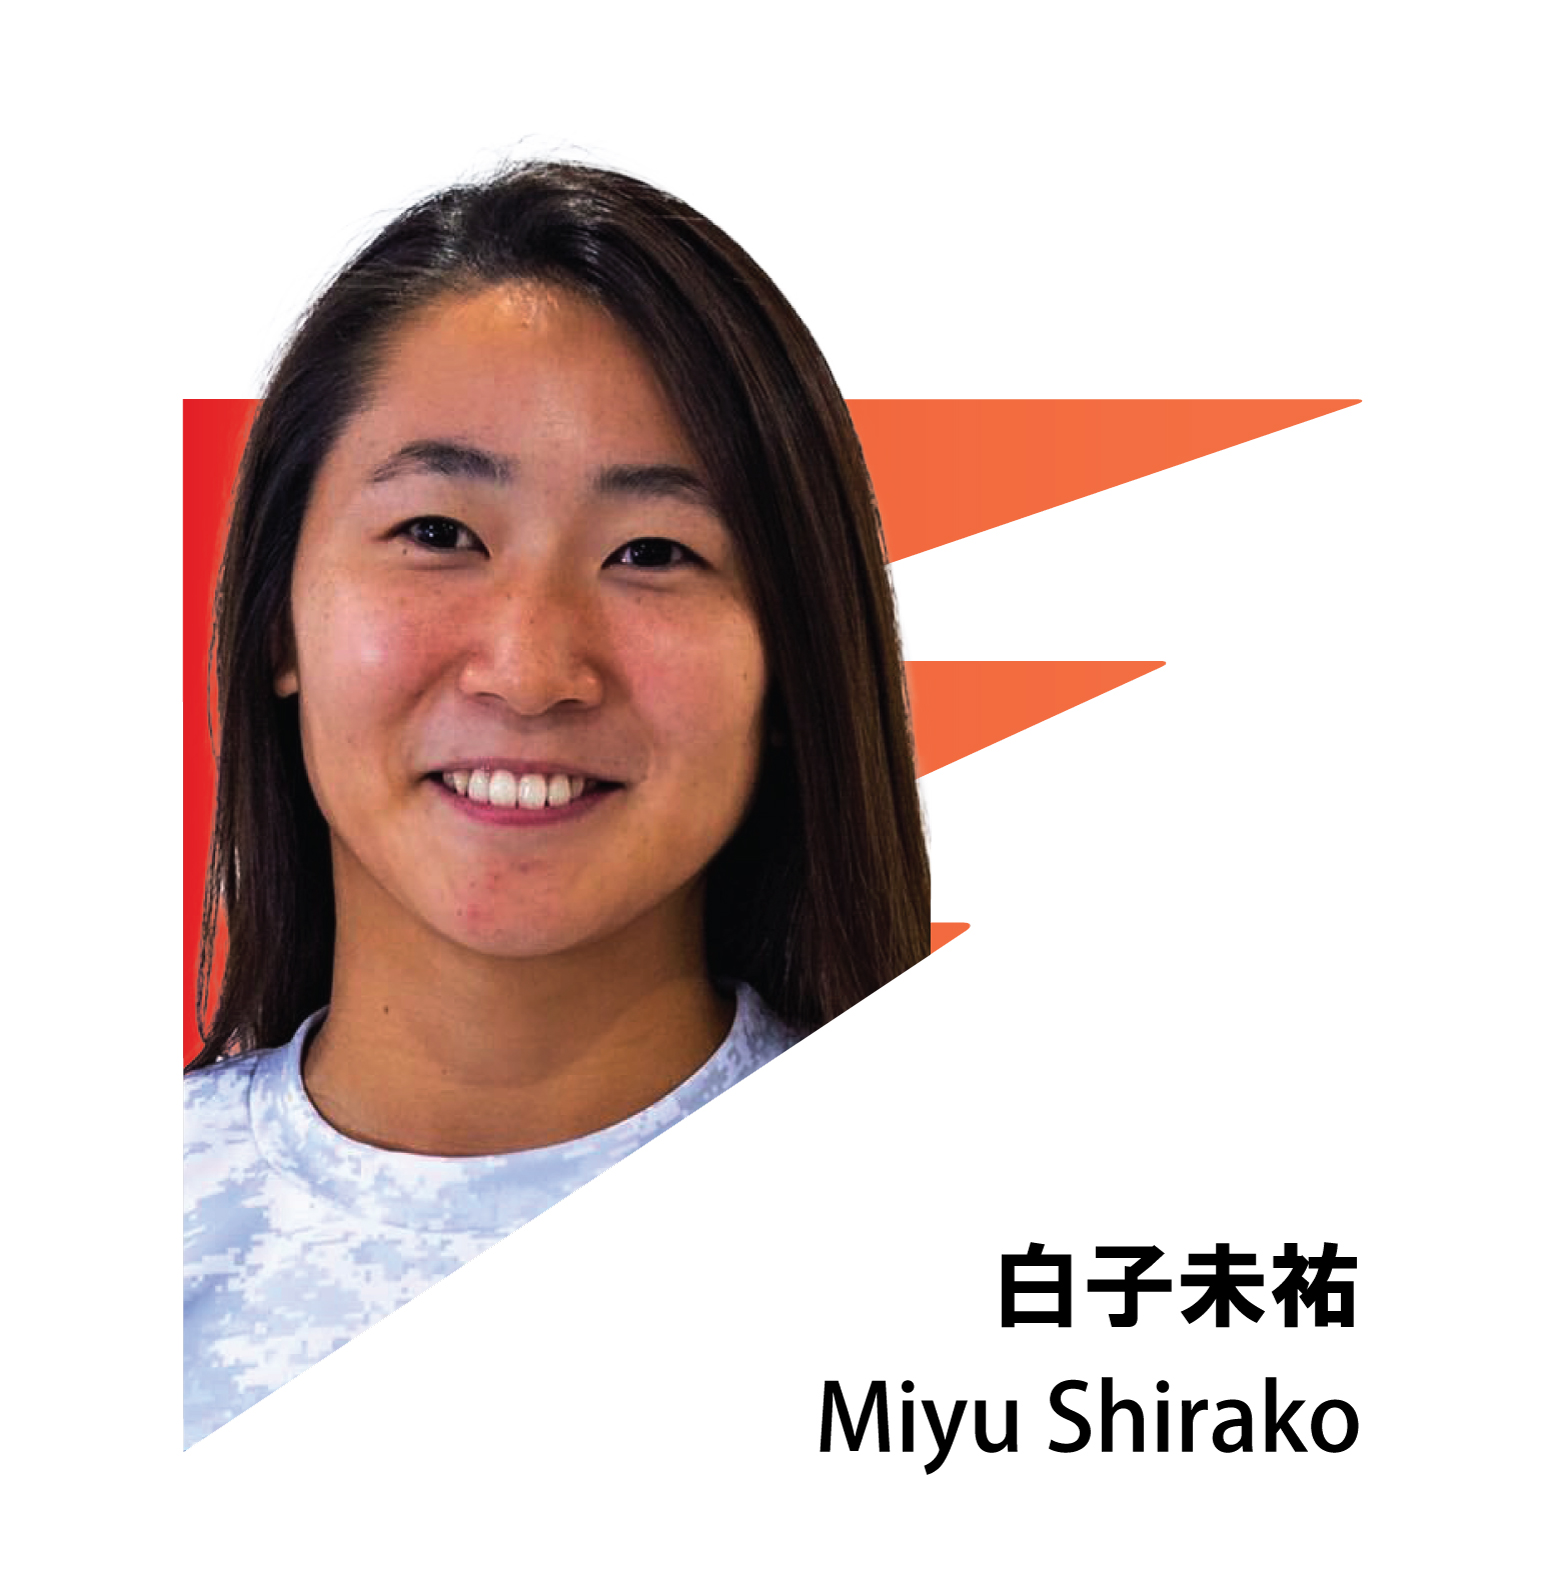 MIYU SHIRAKO